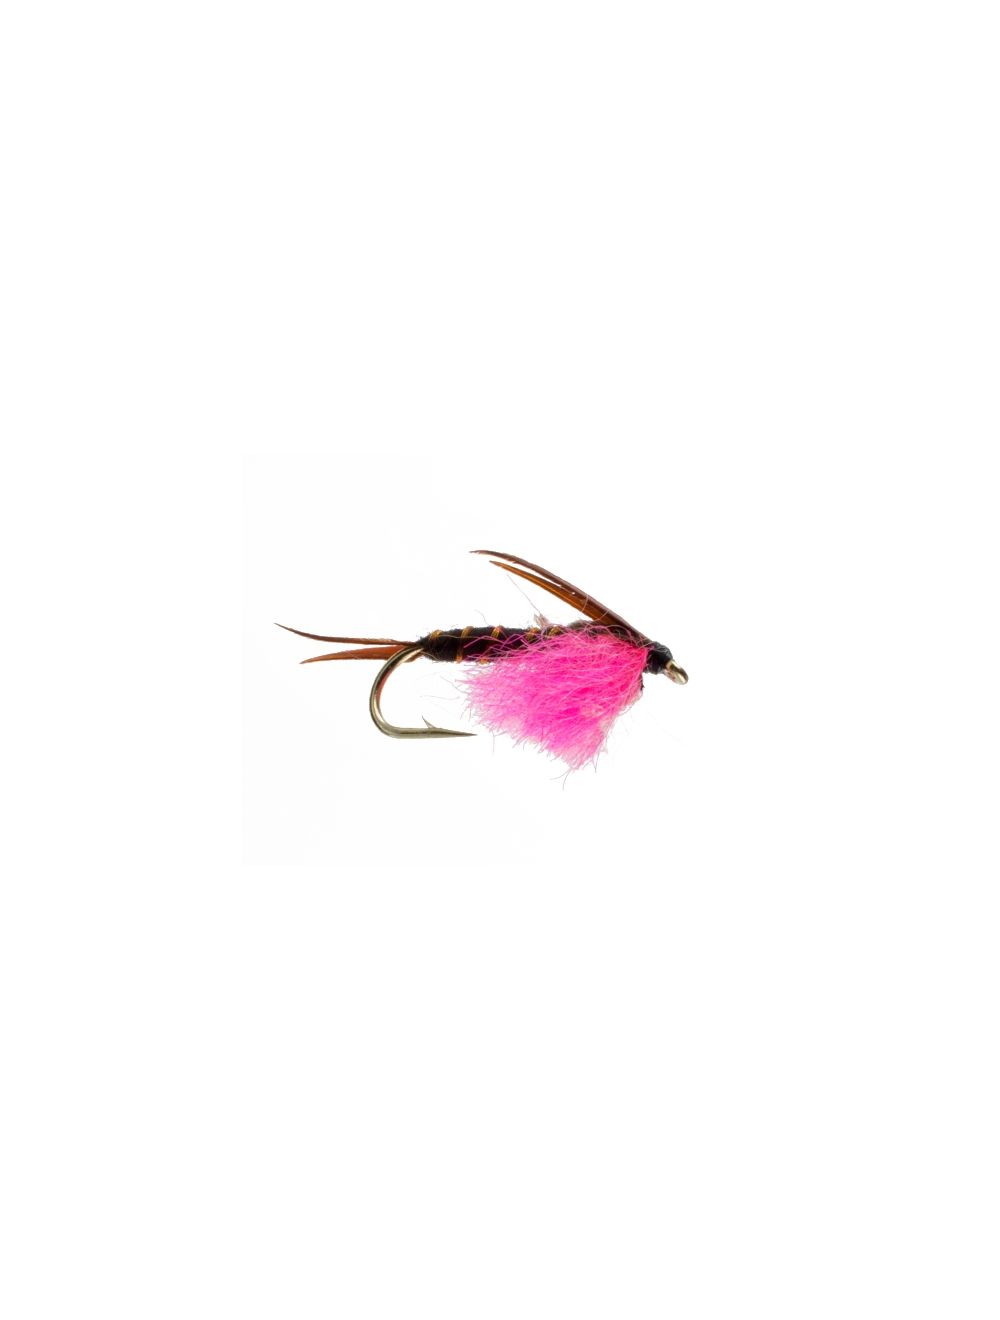 Hot Spot Stonefly, Flourescent Pink